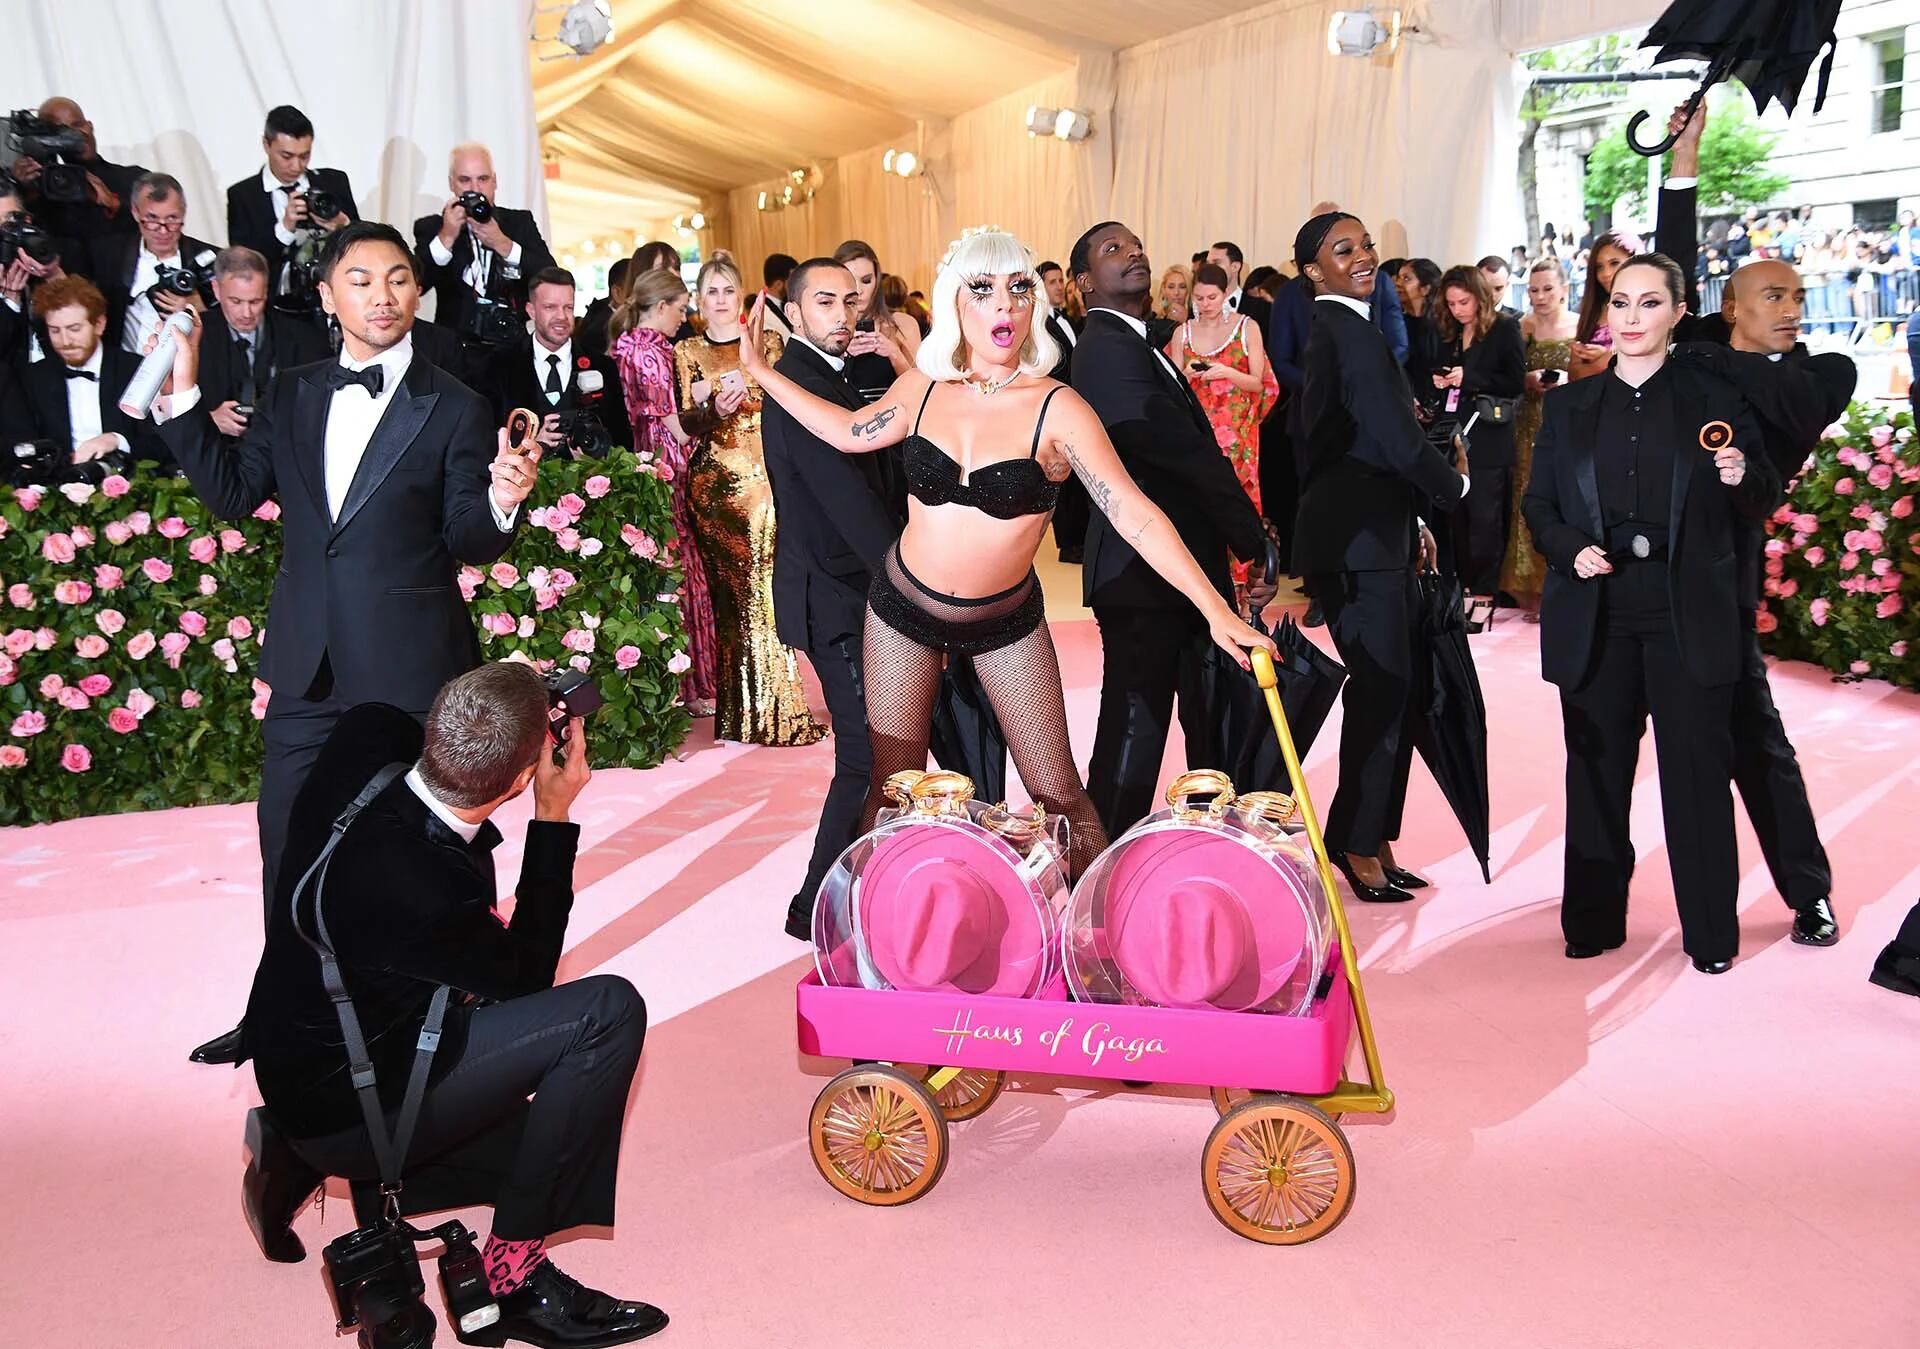 Por supuesto, no sería un “momento Lady Gaga” sin un poco de sensualidad; la cantante y actriz estadounidense se desnudó hasta lucir un conjunto de ropa interior negro con brillantes para captar las miradas de los espectadores